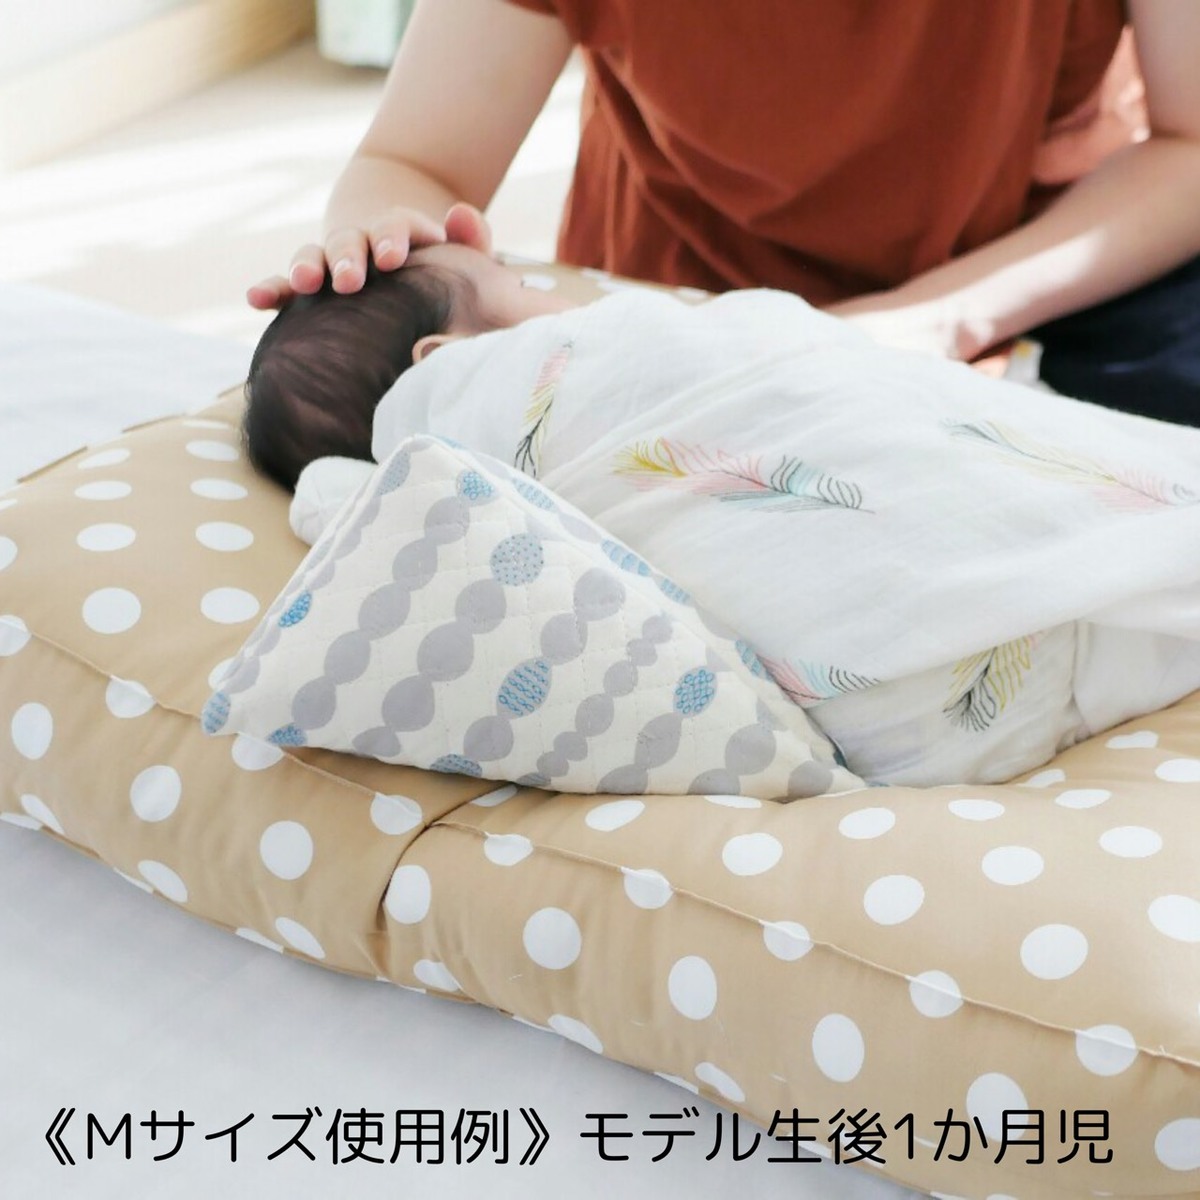 楽天市場 向きぐせ防止 三角クッション Mサイズ 向き癖防止クッション 枕 赤ちゃん専門shop Luck Baby